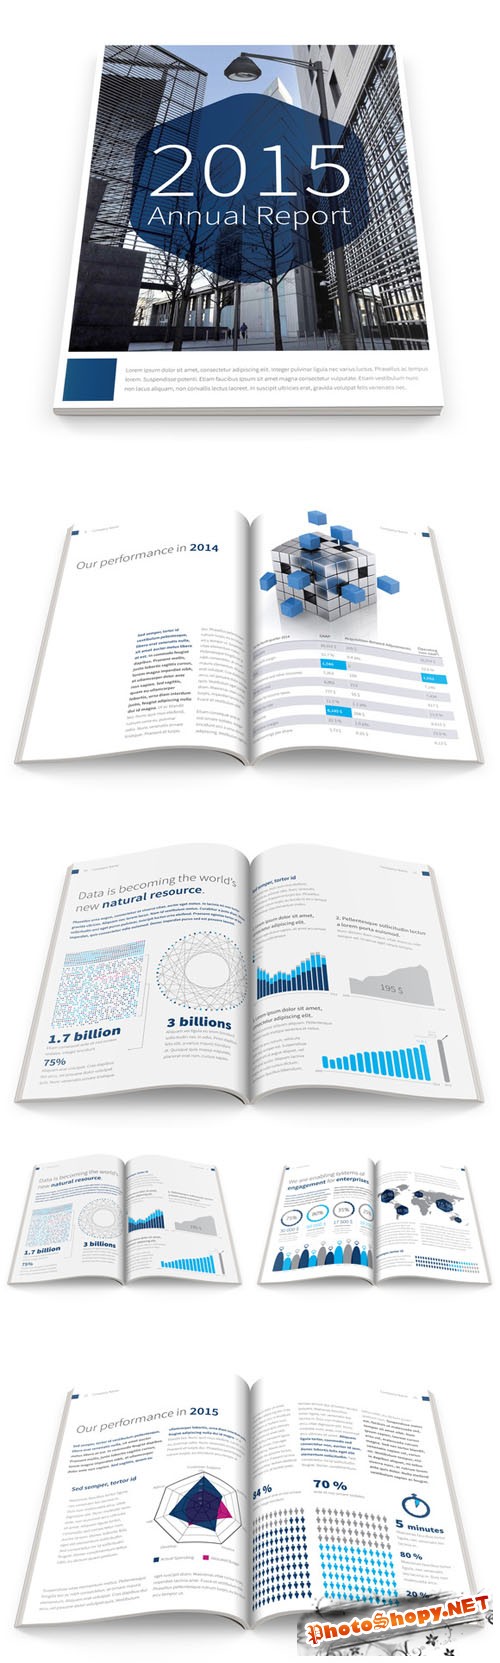 CreativeMarket - Annual Report 2015